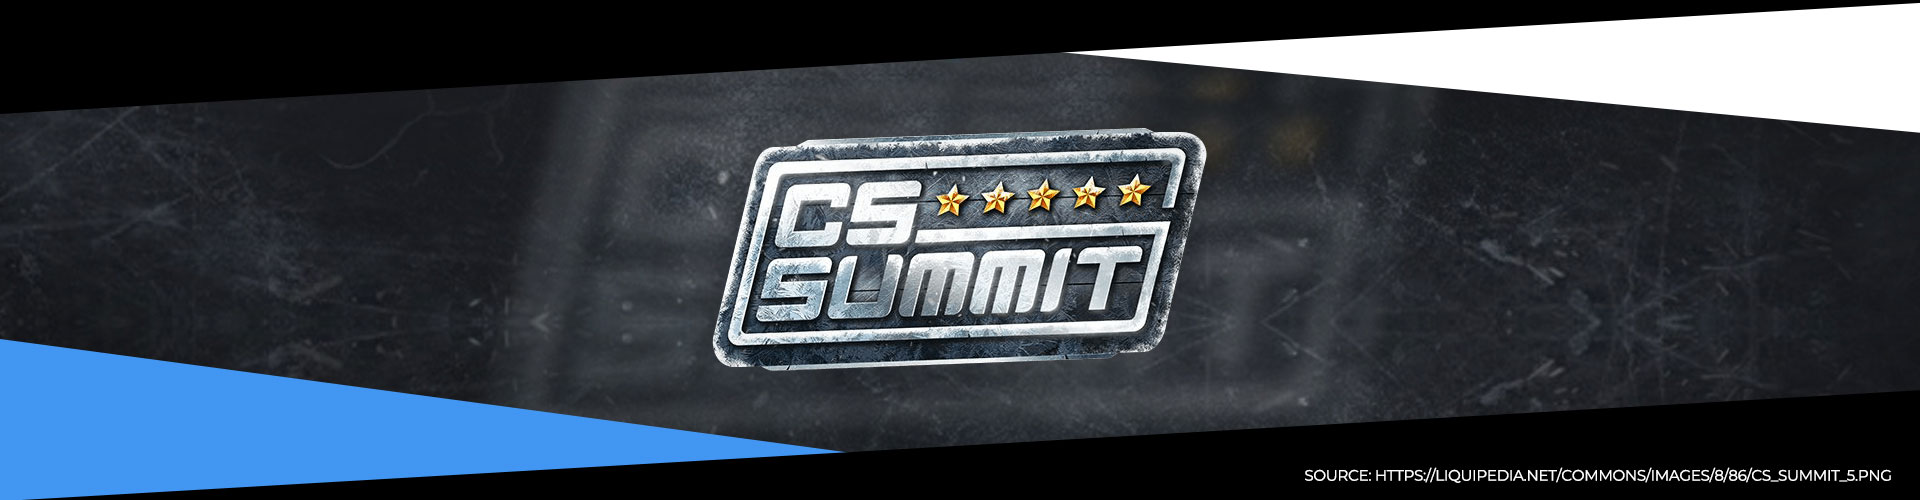 Eventsida för CS_Summit 5 som avgörs årligen i Los Angeles.